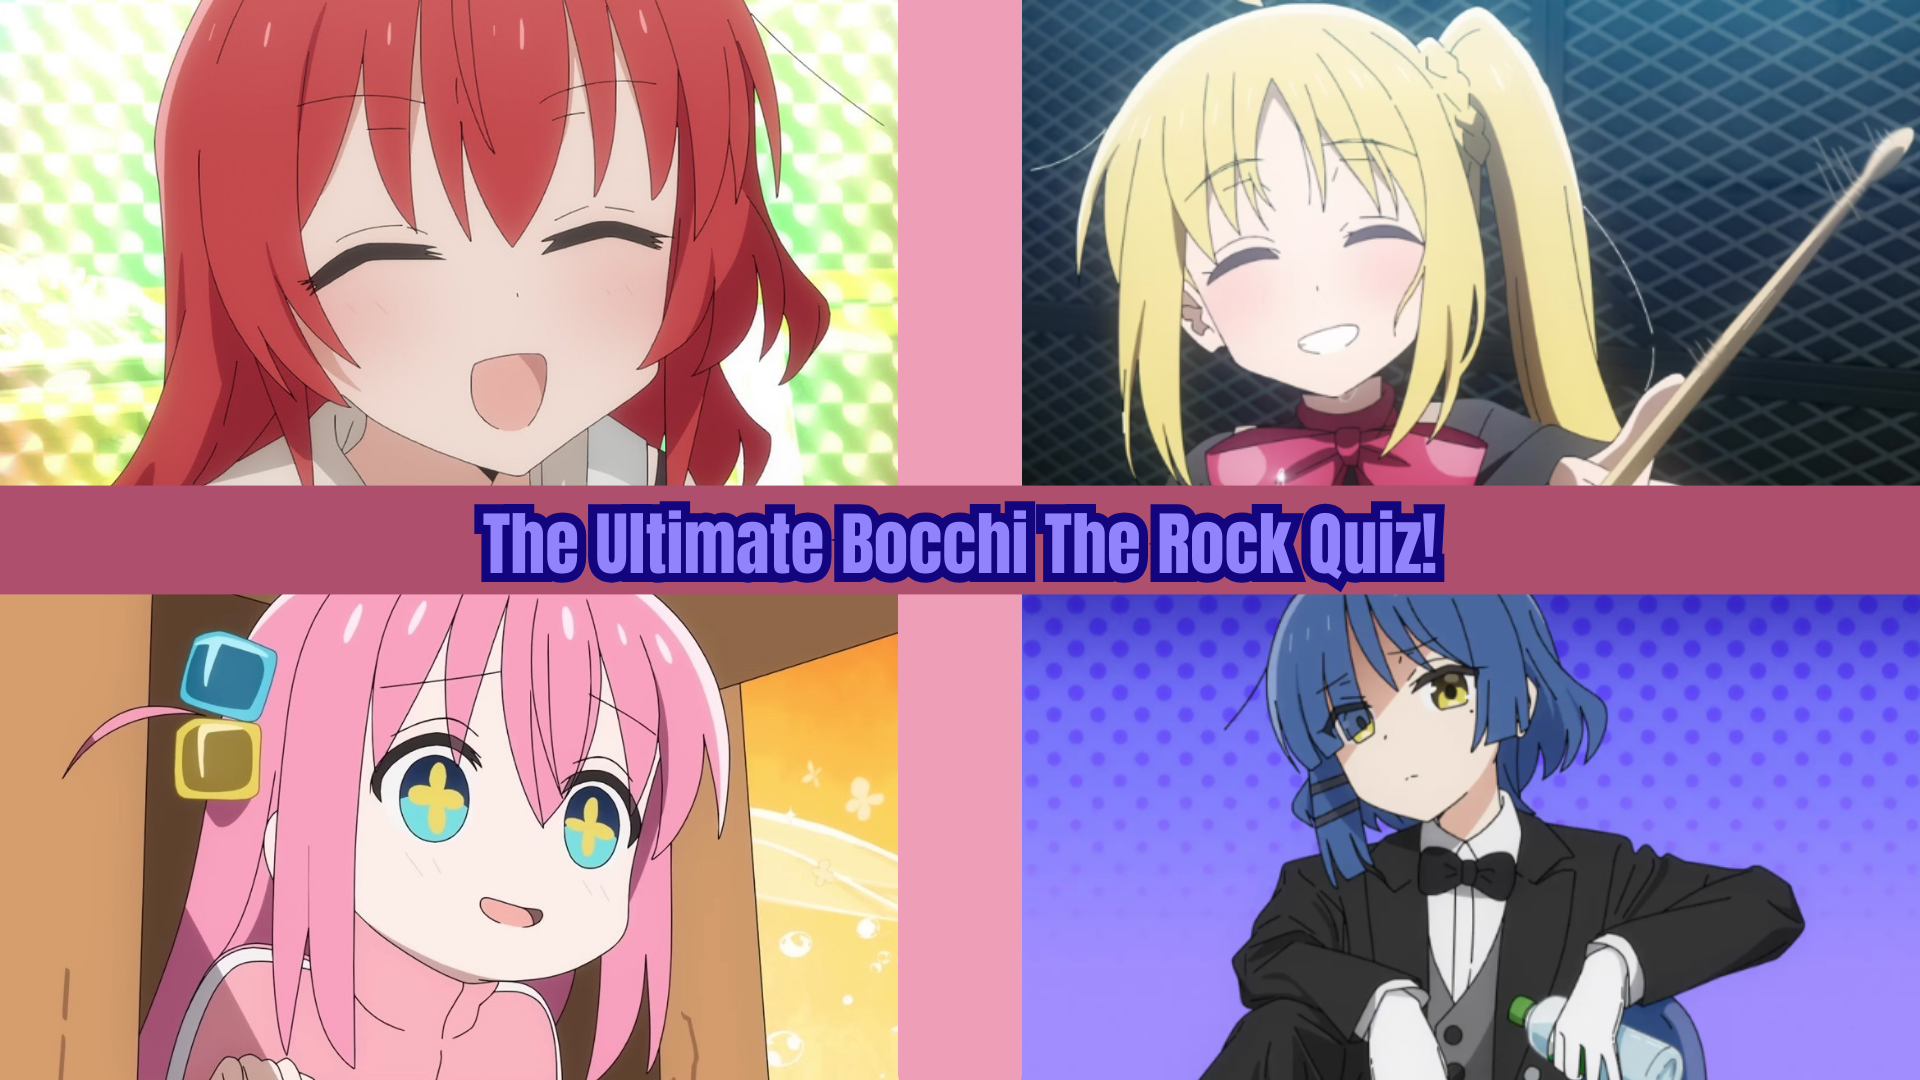 The Ultimate Bocchi The Rock Quiz!